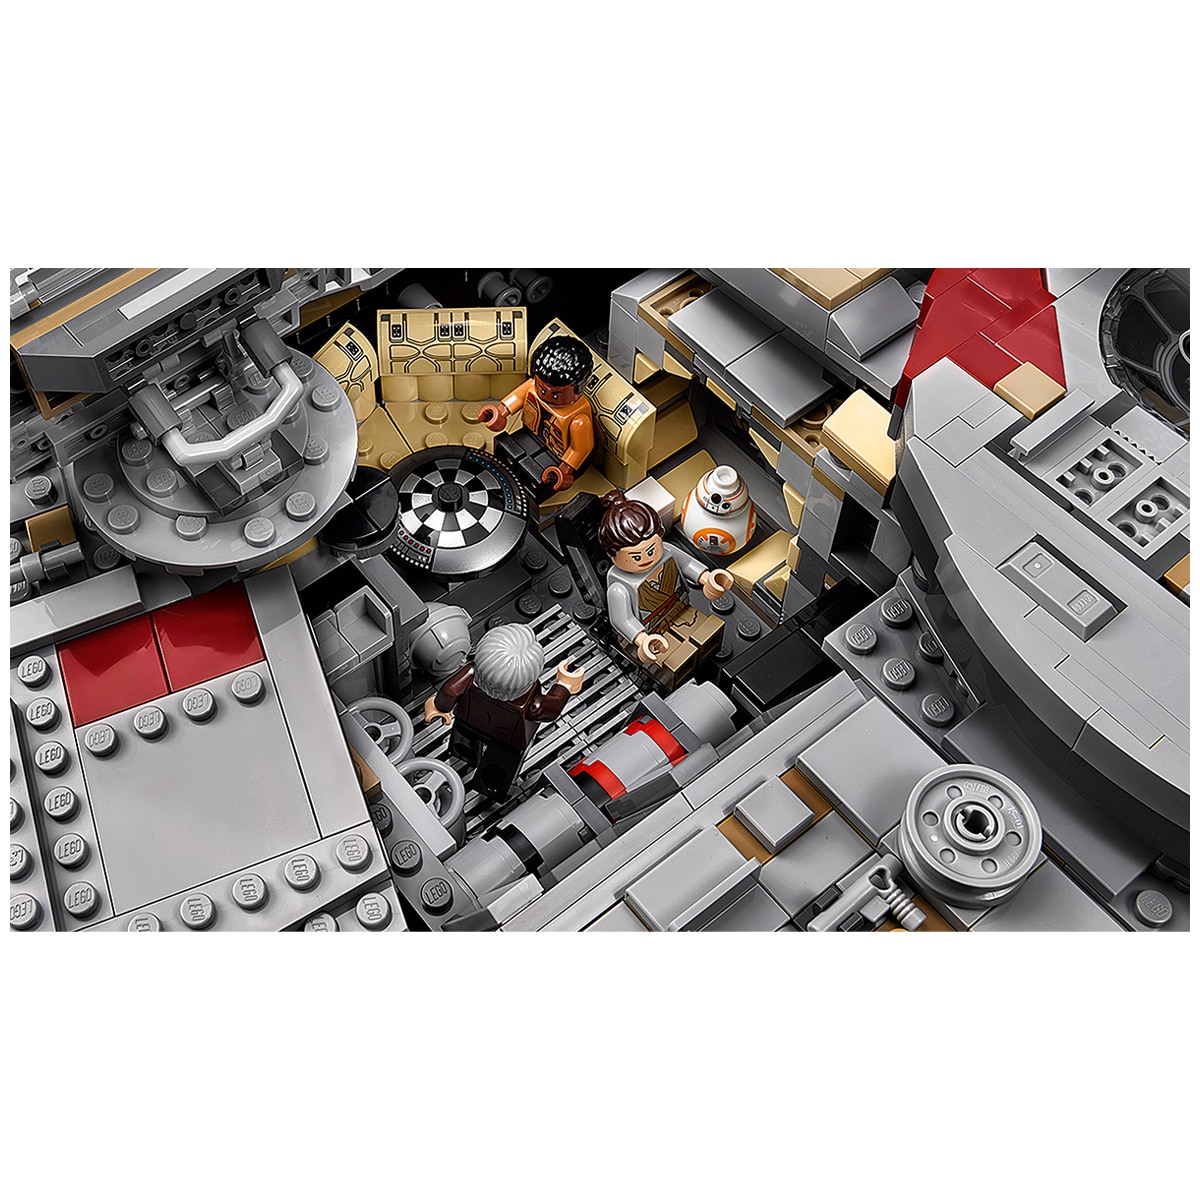 Lego Star Wars Millennium Falcon 75192